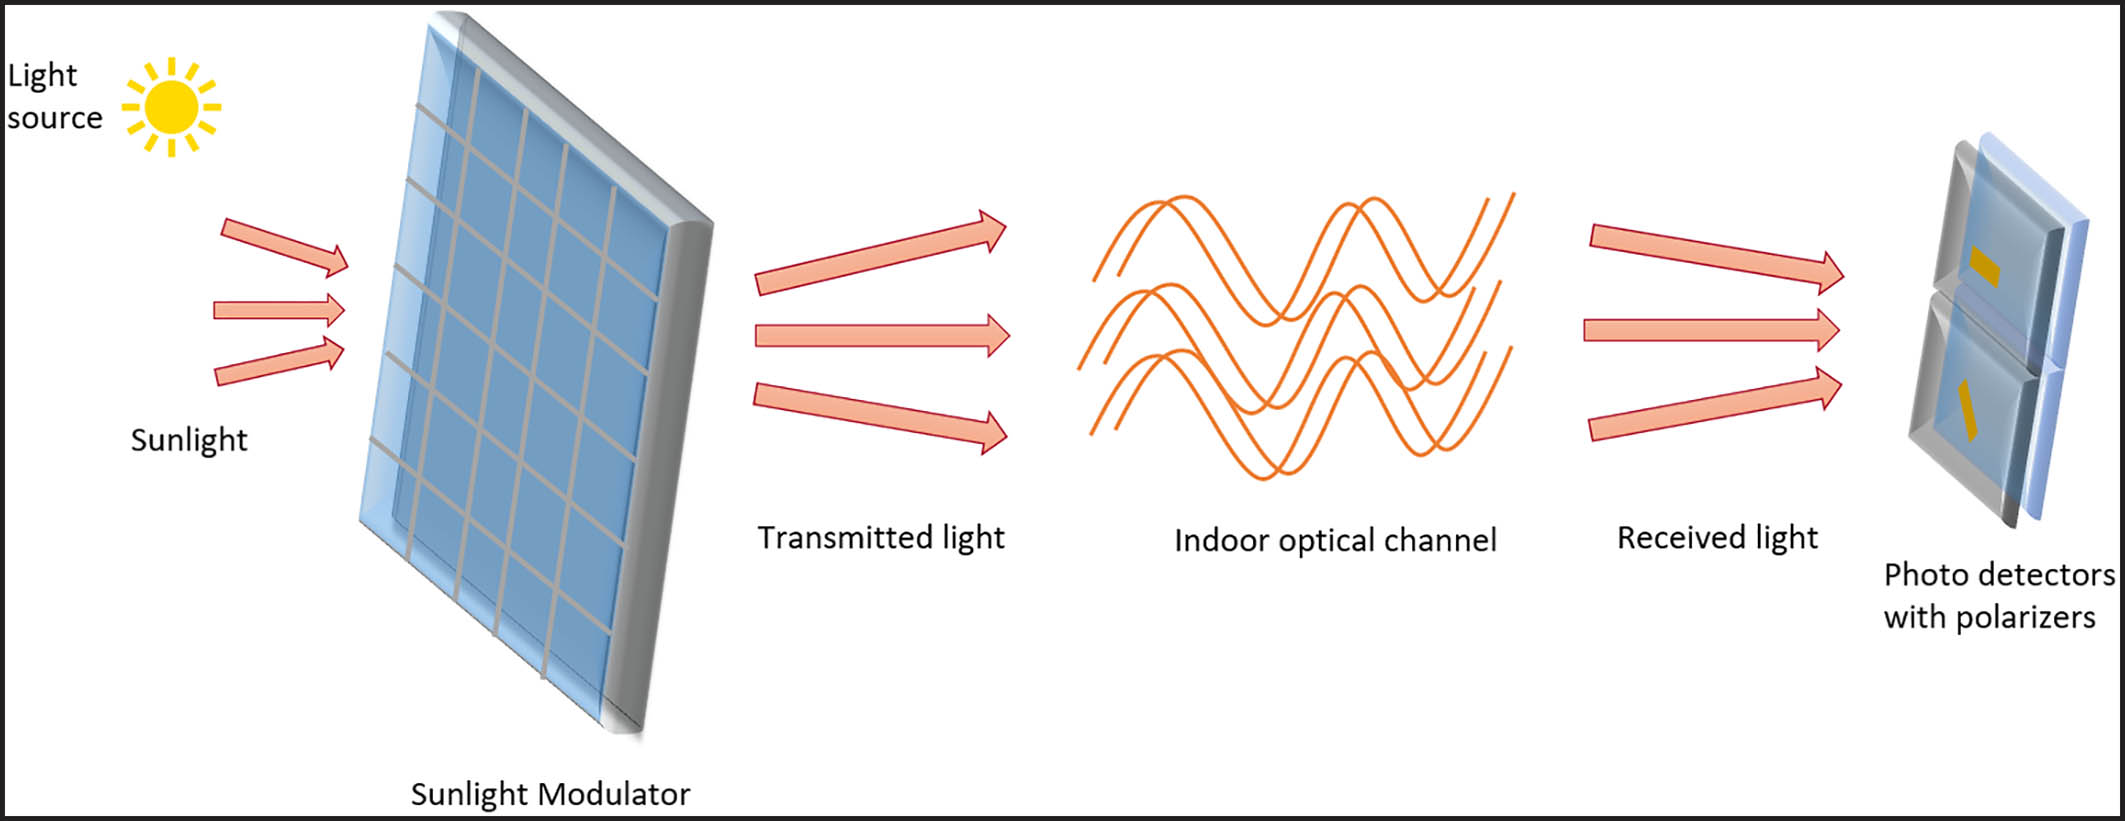 Модулятор солнечного света для пассивной передачи данных как альтернатива WiFi - 2